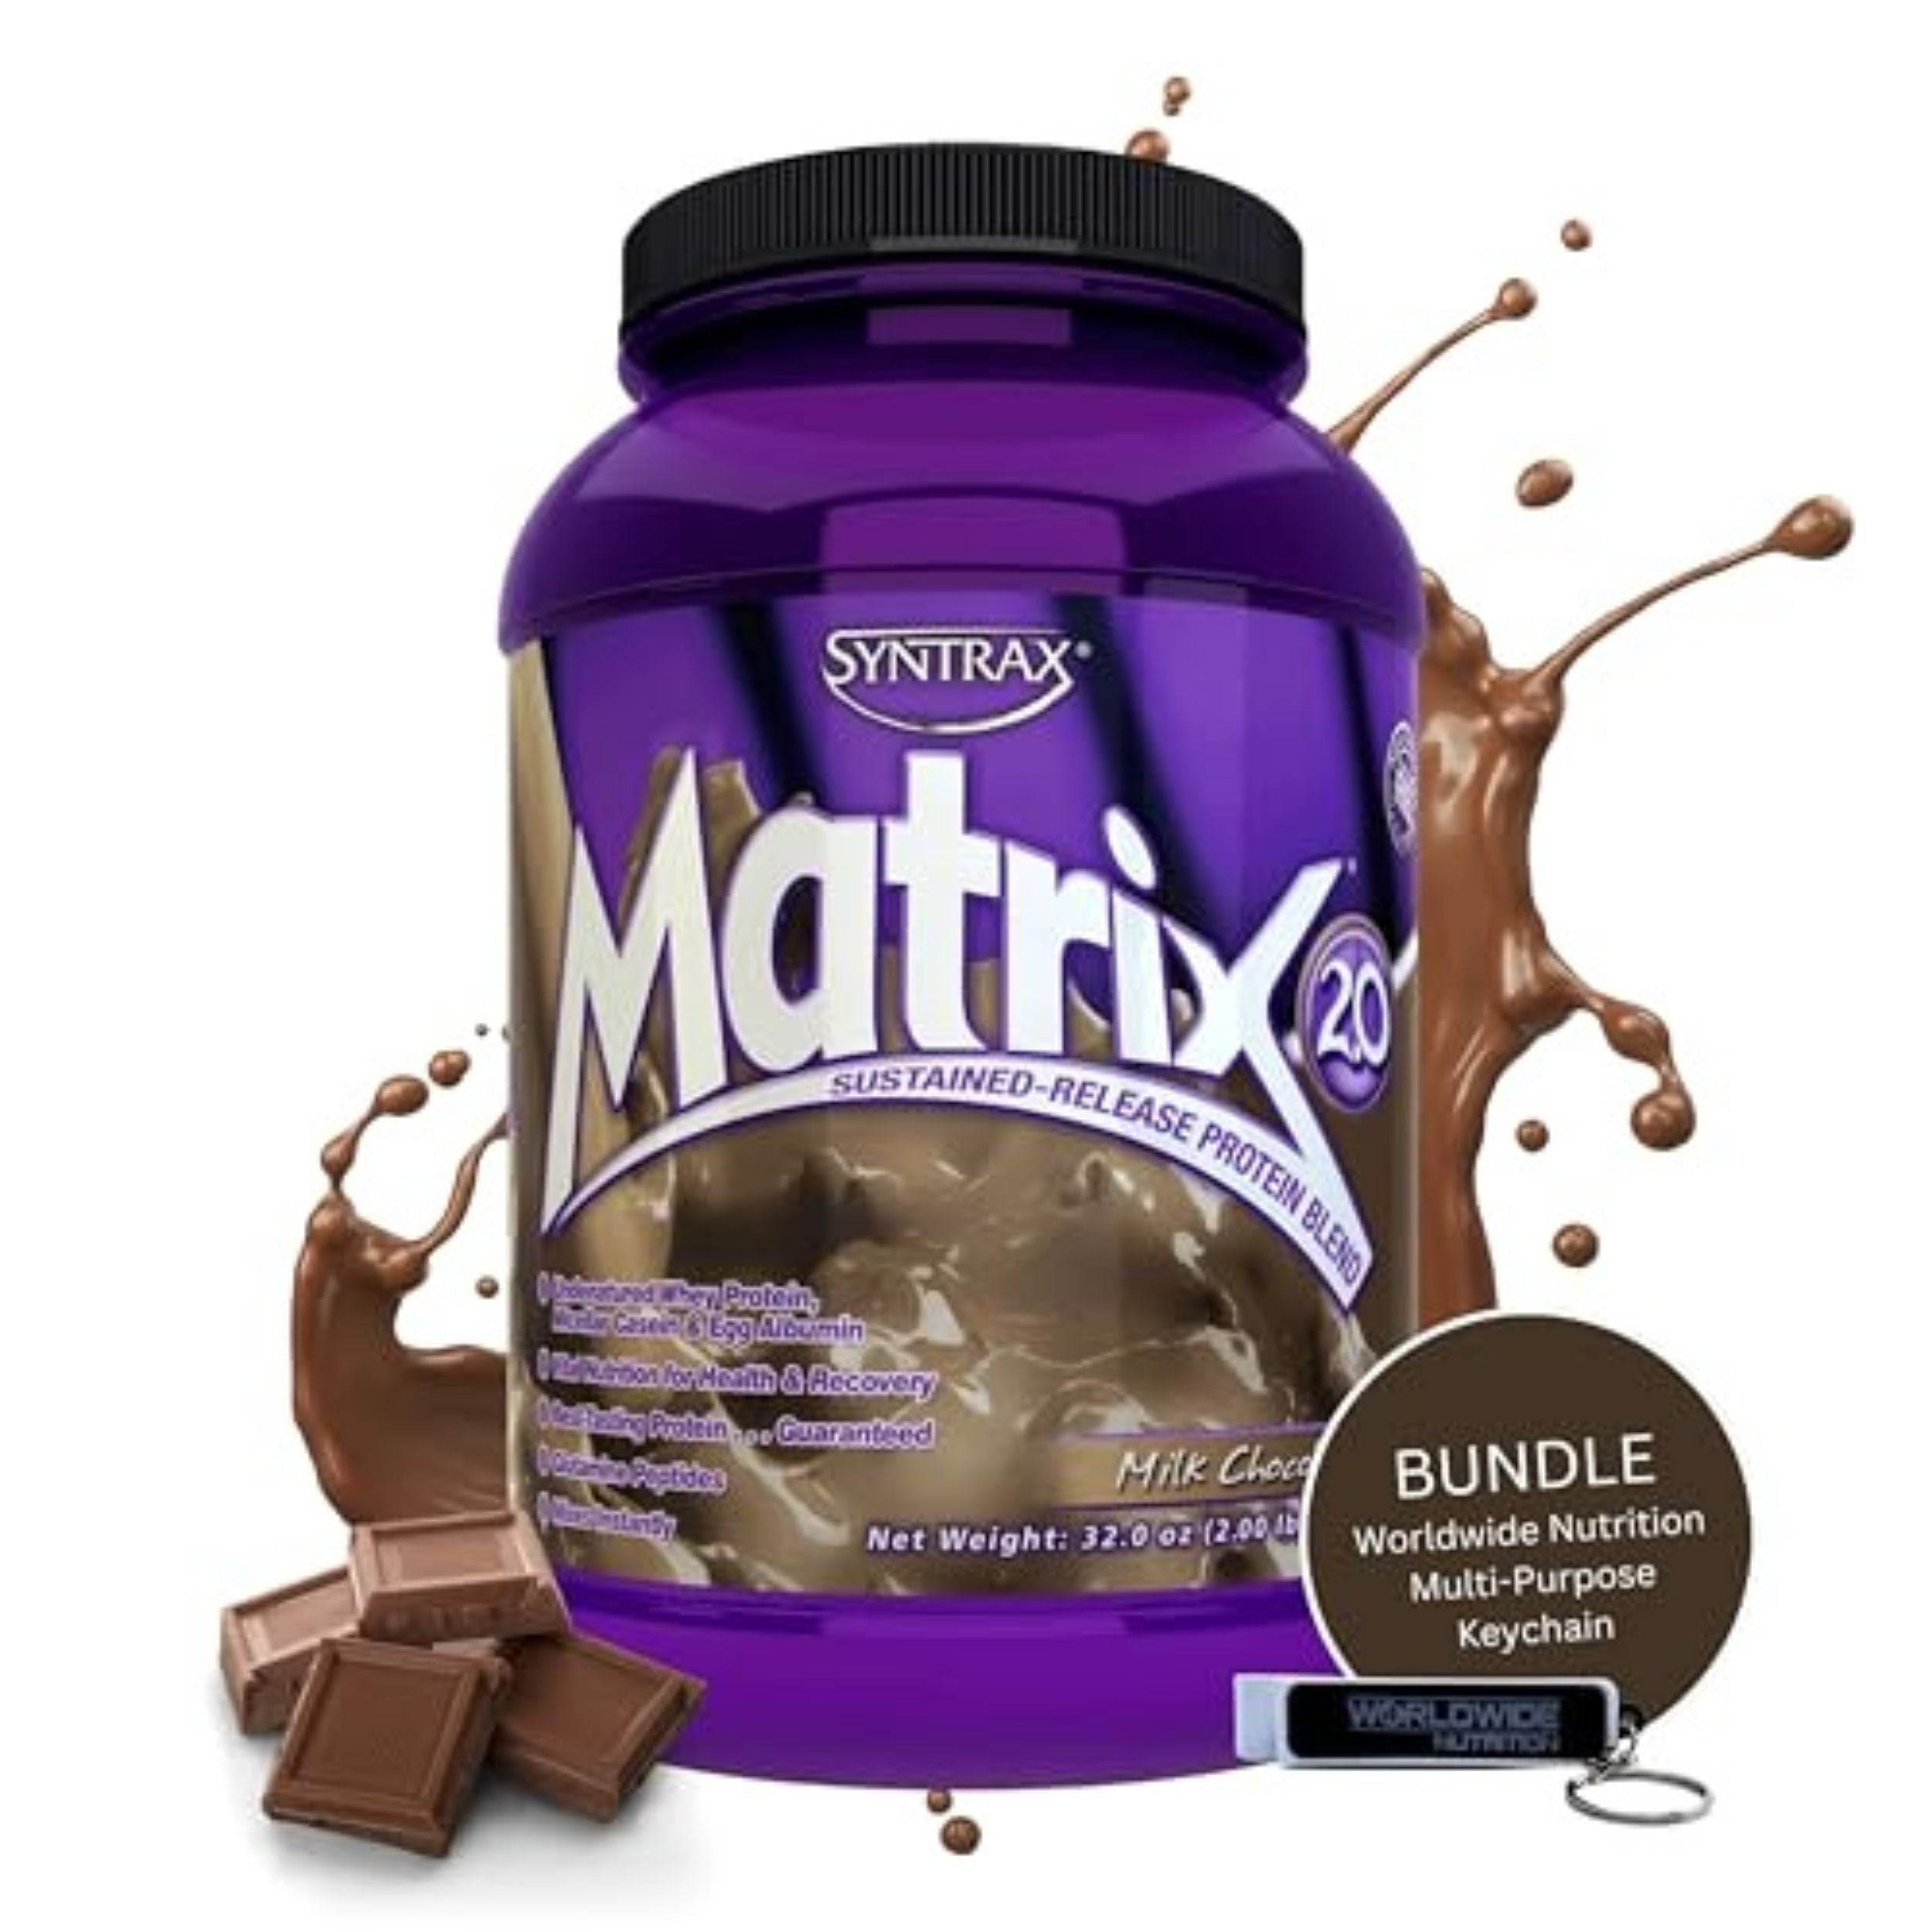 Syntrax Bundle, 2 Items: Matrix Milk Chocolate Whey Casein Blend Protein Powder - Instant Mix High Protein Powder 2lb Kosher and Halal Whey Protein with Worldwide Nutrition Keychain